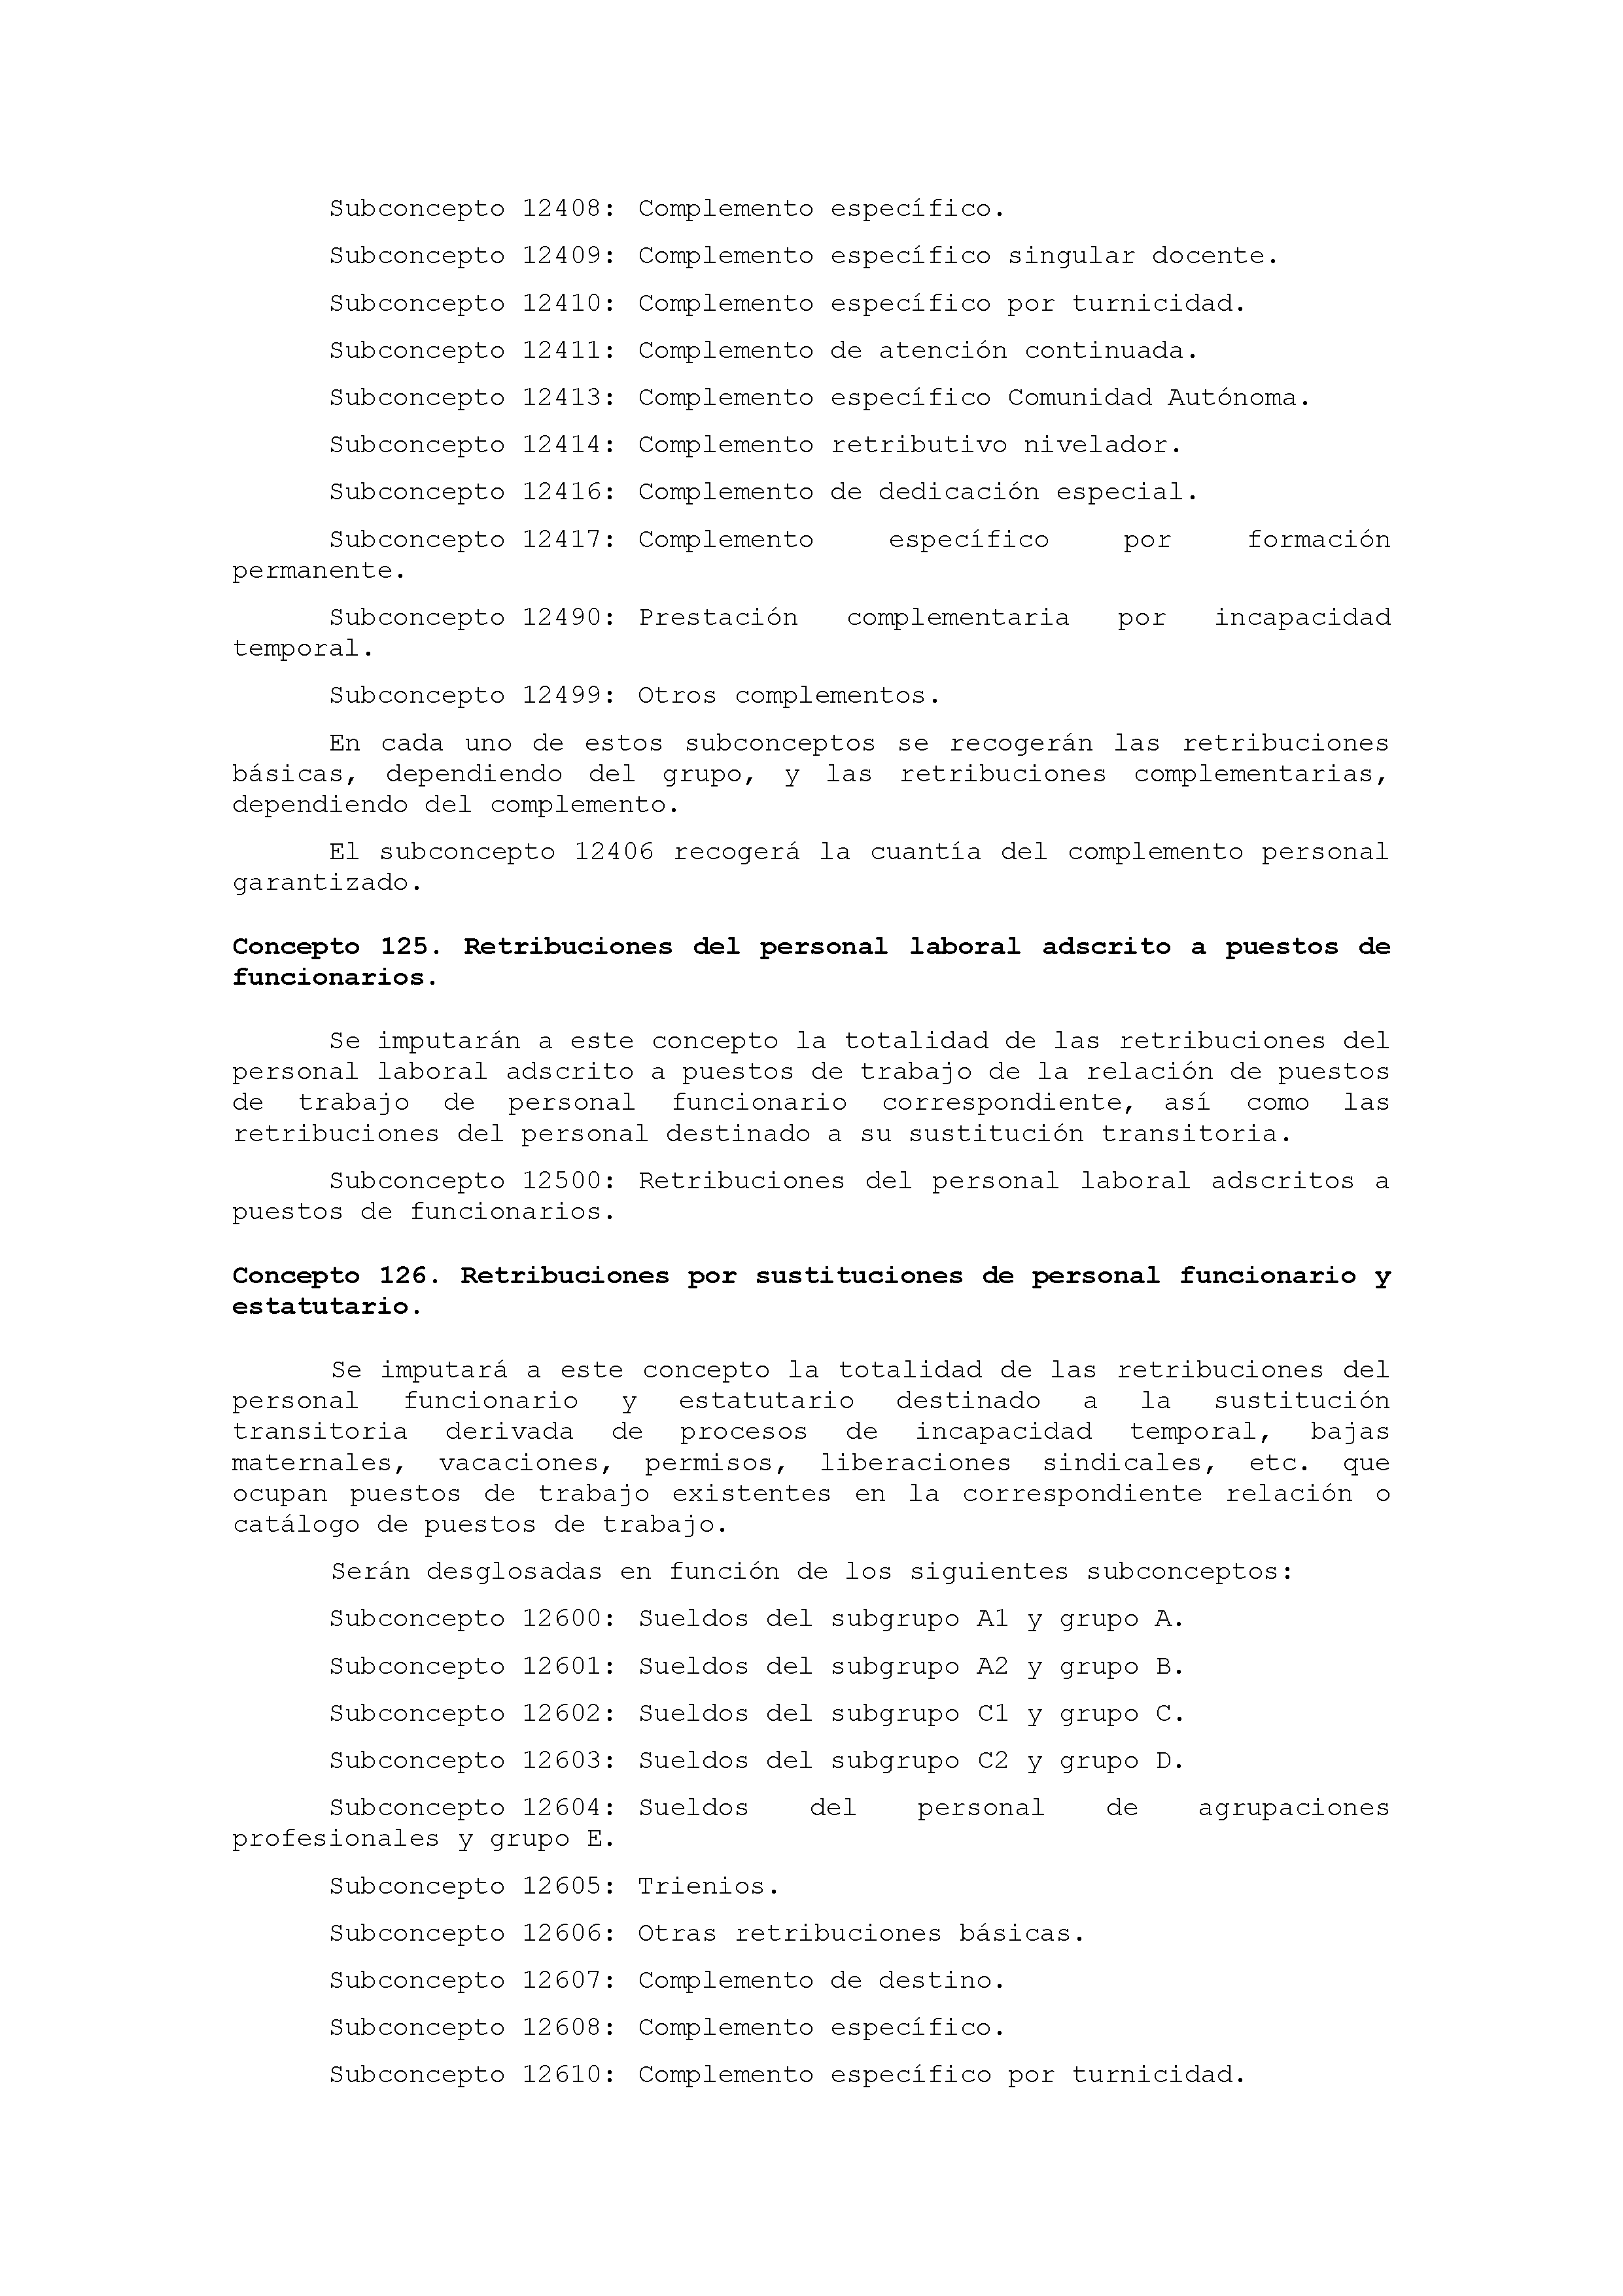 ANEXO IX CÓDIGO DE LA CLASIFICACIÓN ECONÓMICA DE LOS GASTOS PÚBLICOS Pag 7